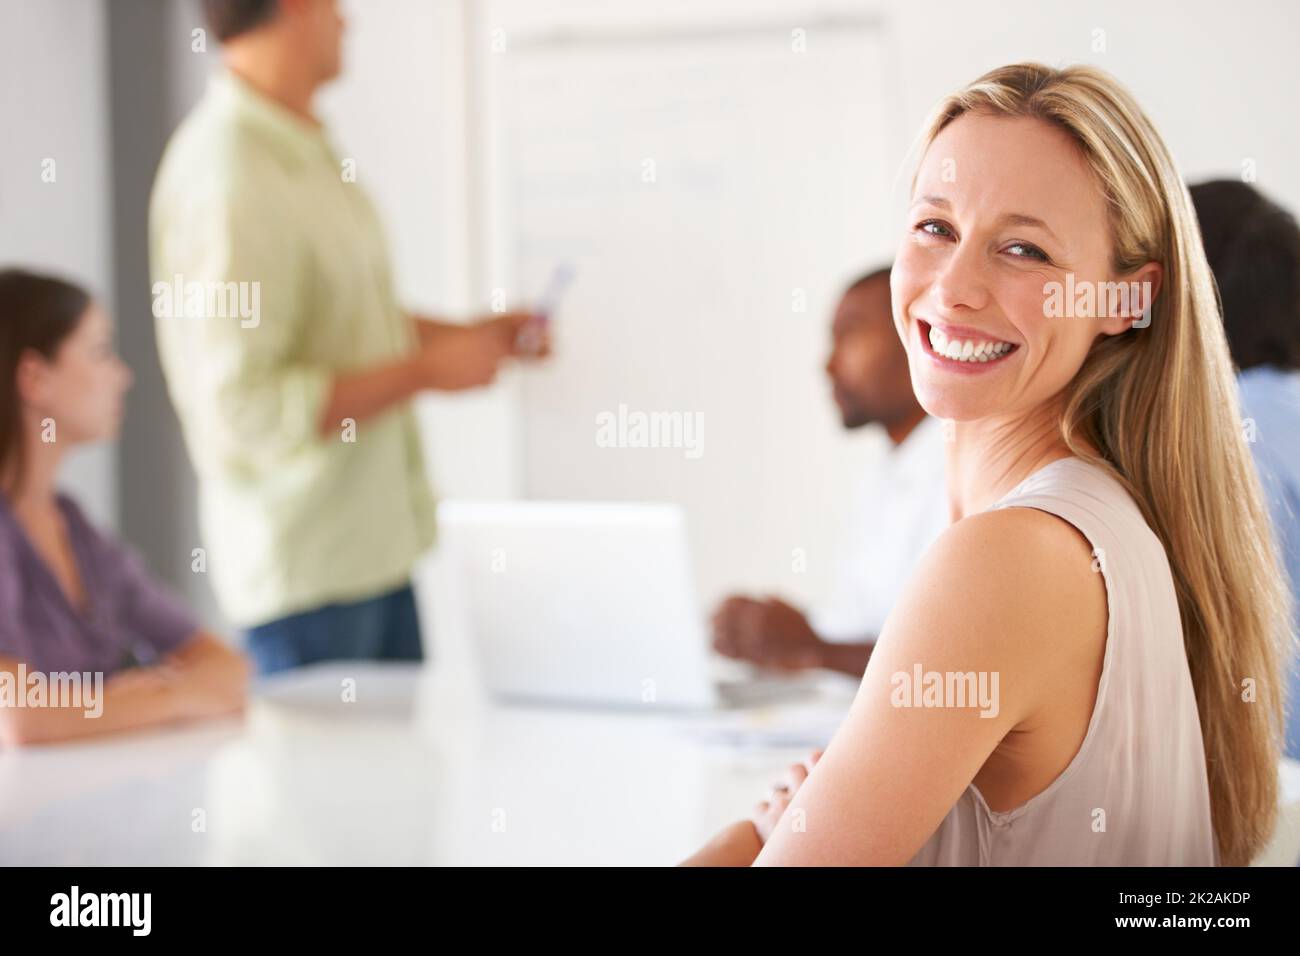 Inhalte in ihrer Karriere und ihrem Team. Eine lächelnde Geschäftsfrau, die Sie während eines Teammeeting ansieht. Stockfoto